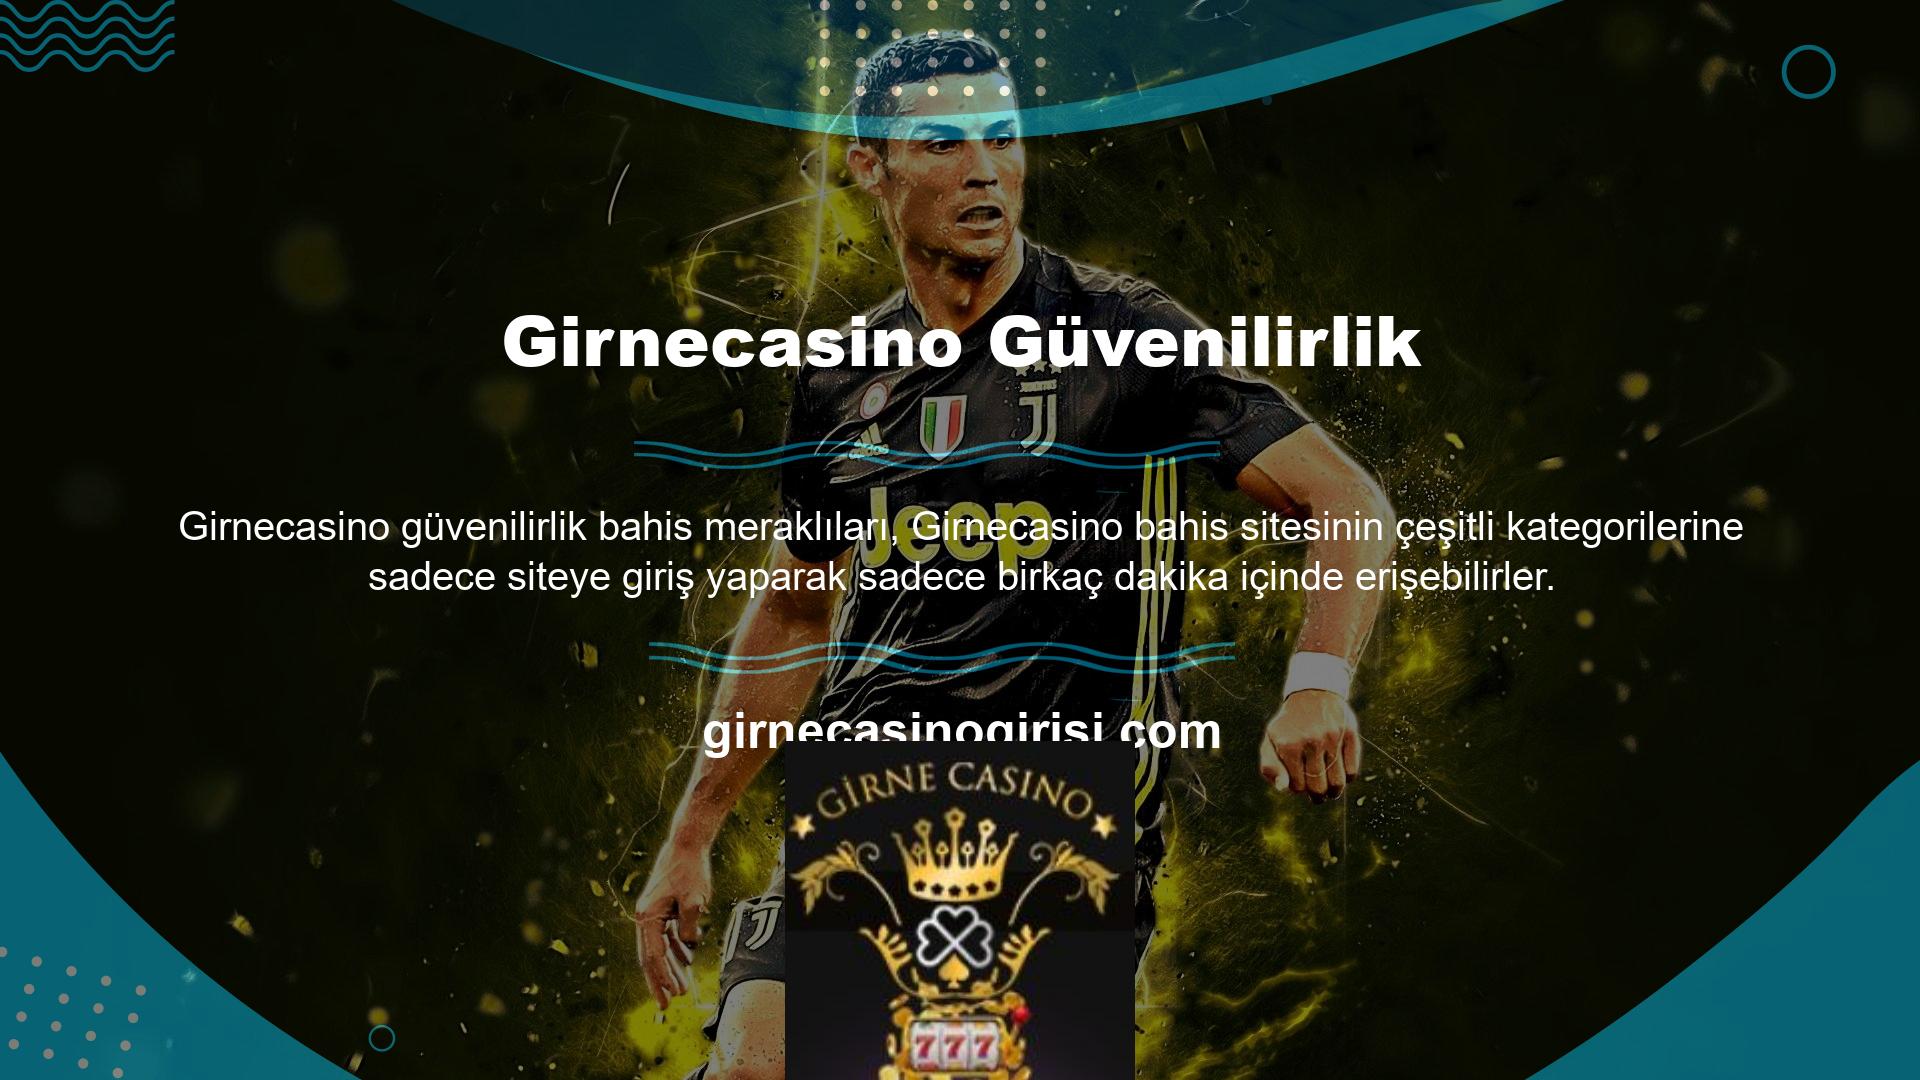 Girnecasino mobil sitesinin benzersiz ekran tasarımı ve animasyon özellikleri de bahisçilerin sevdiği detaylar arasında yer alıyor